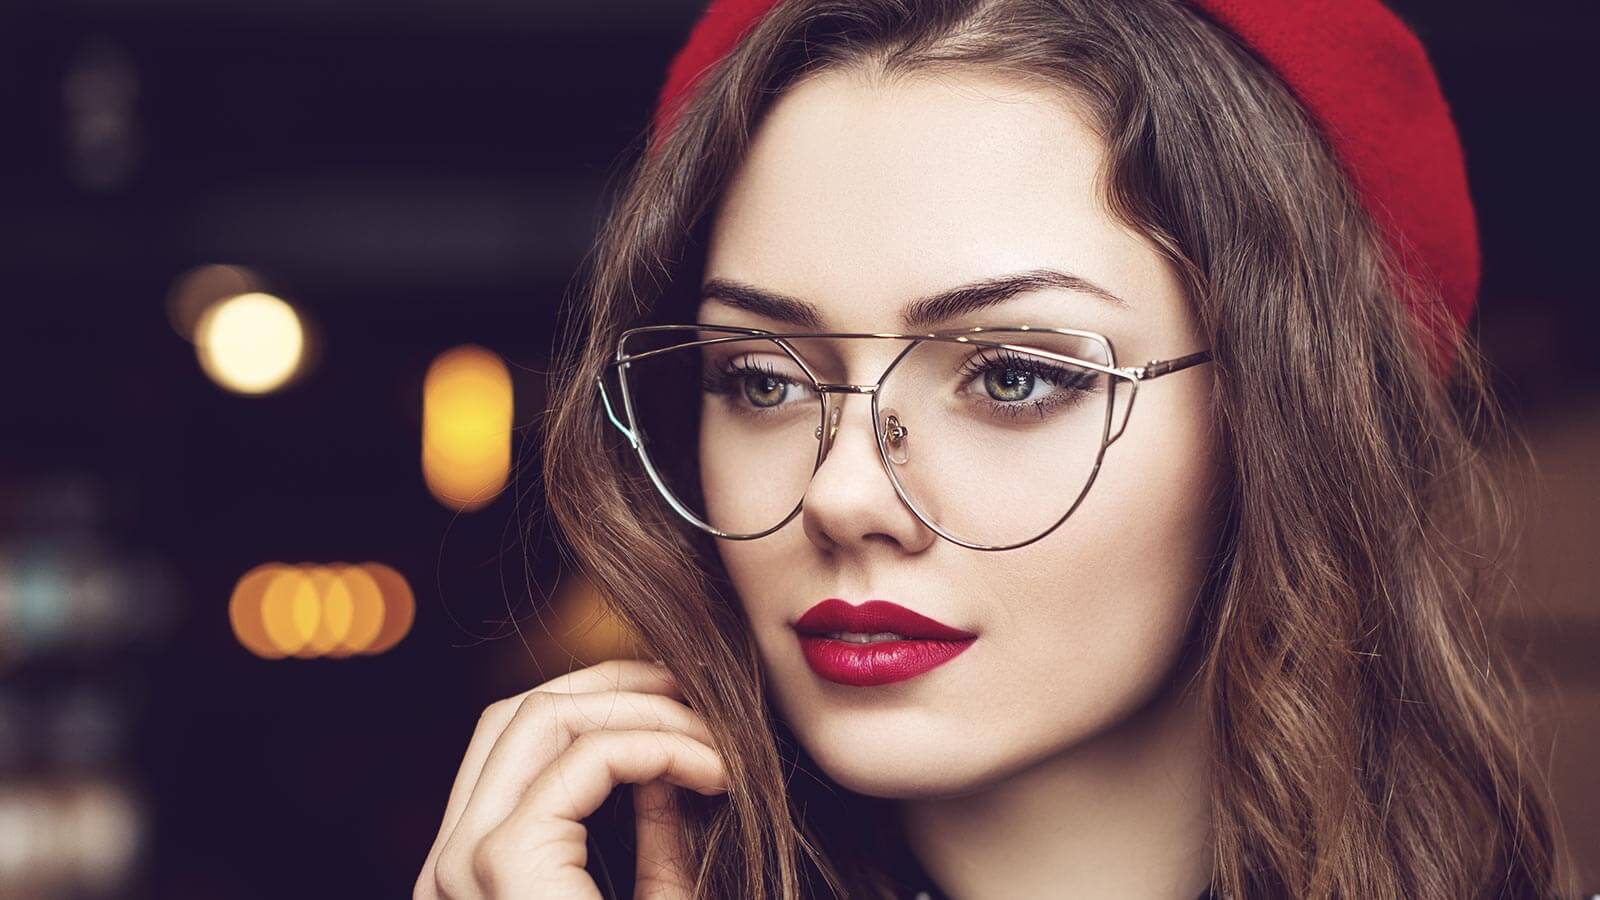 Top 5 Biggest Trends in Women’s Glasses in 2021